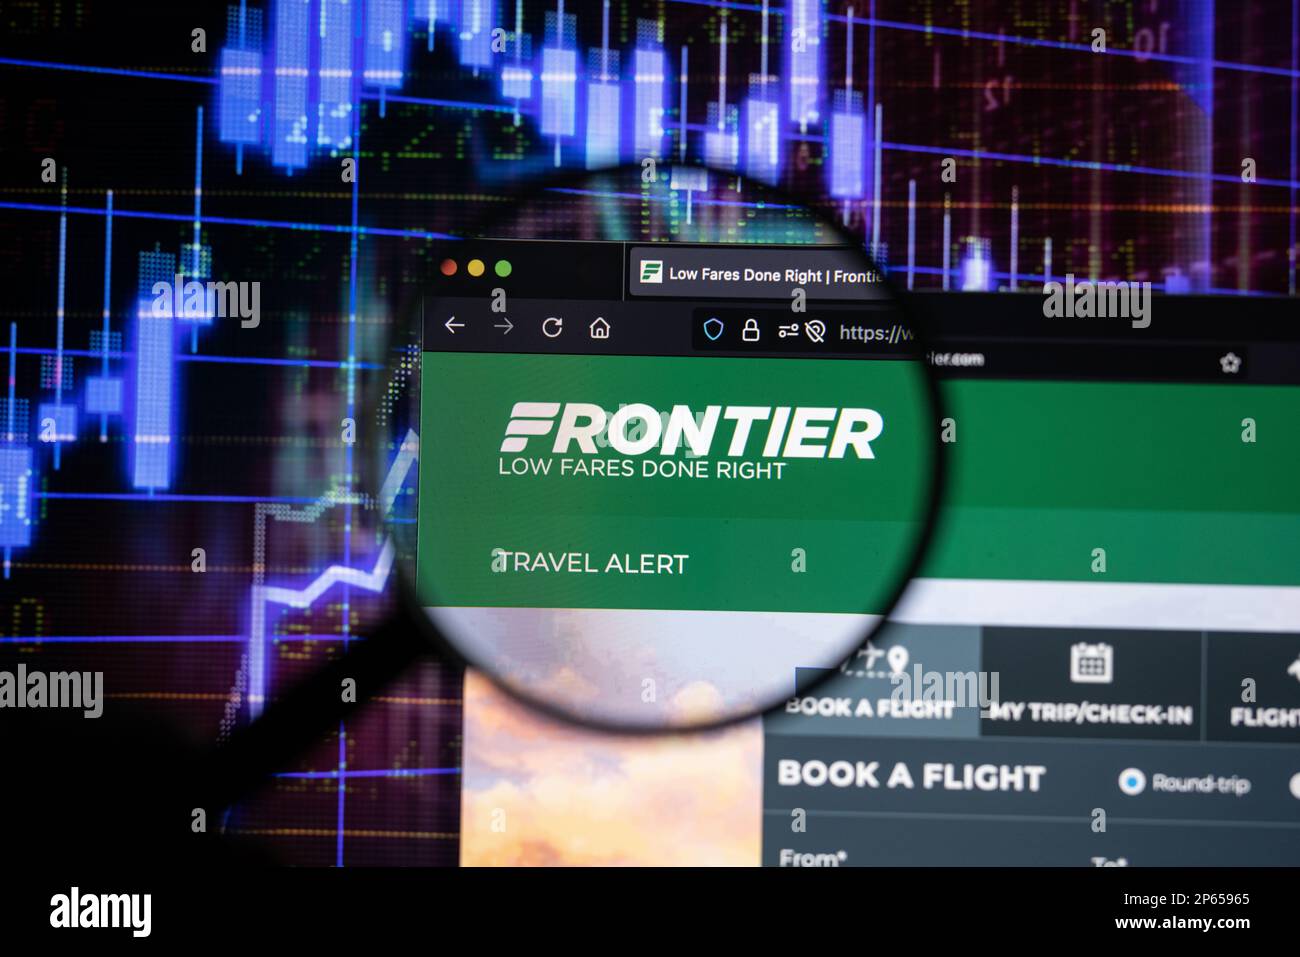 Frontier compagnia aerea logo su un sito web con blurry mercato azionario sviluppi in background, visto su uno schermo attraverso una lente di ingrandimento Foto Stock